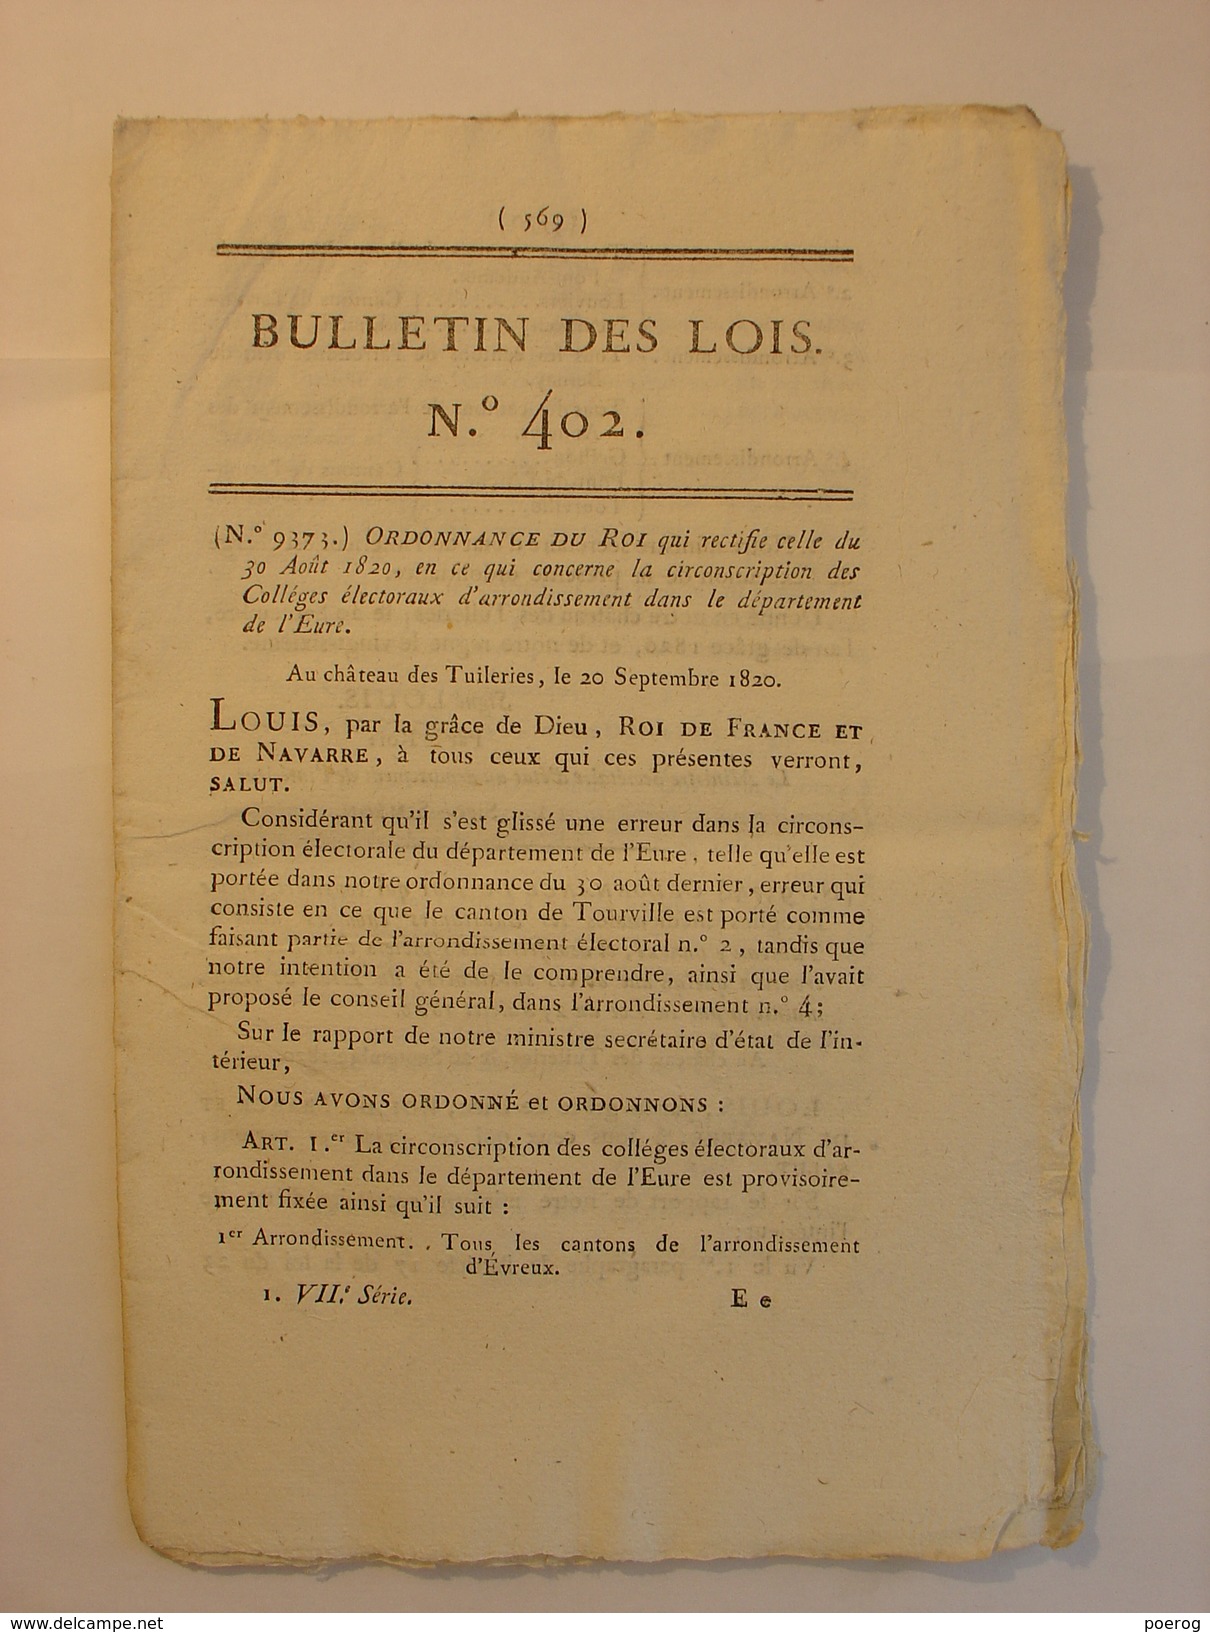 BULLETIN DES LOIS De 1820 - MEDECINE MEDICAMENT LISTE DROGUES MEDICINALES - ARCHEVEQUES BOURGES TOULOUSE EVEQUE SOISSONS - Decreti & Leggi